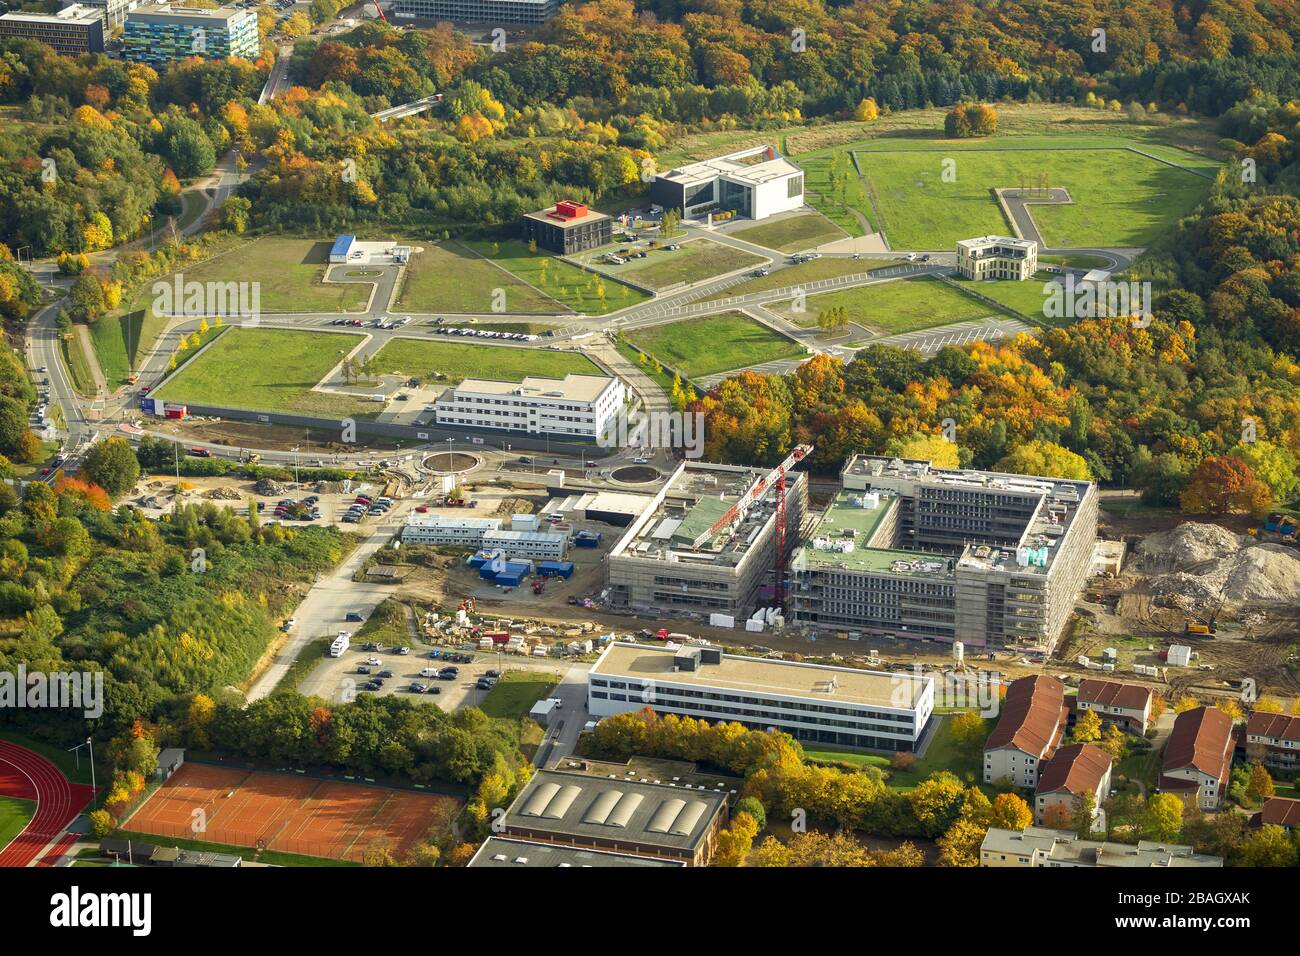 Nouveau campus de santé du parc de biomédecine à Bochum, Hochschule fuer Gesundheit à Bochum-Querenburg, 22.10.2013, vue aérienne, Allemagne, Rhénanie-du-Nord-Westphalie, région de la Ruhr, Bochum Banque D'Images